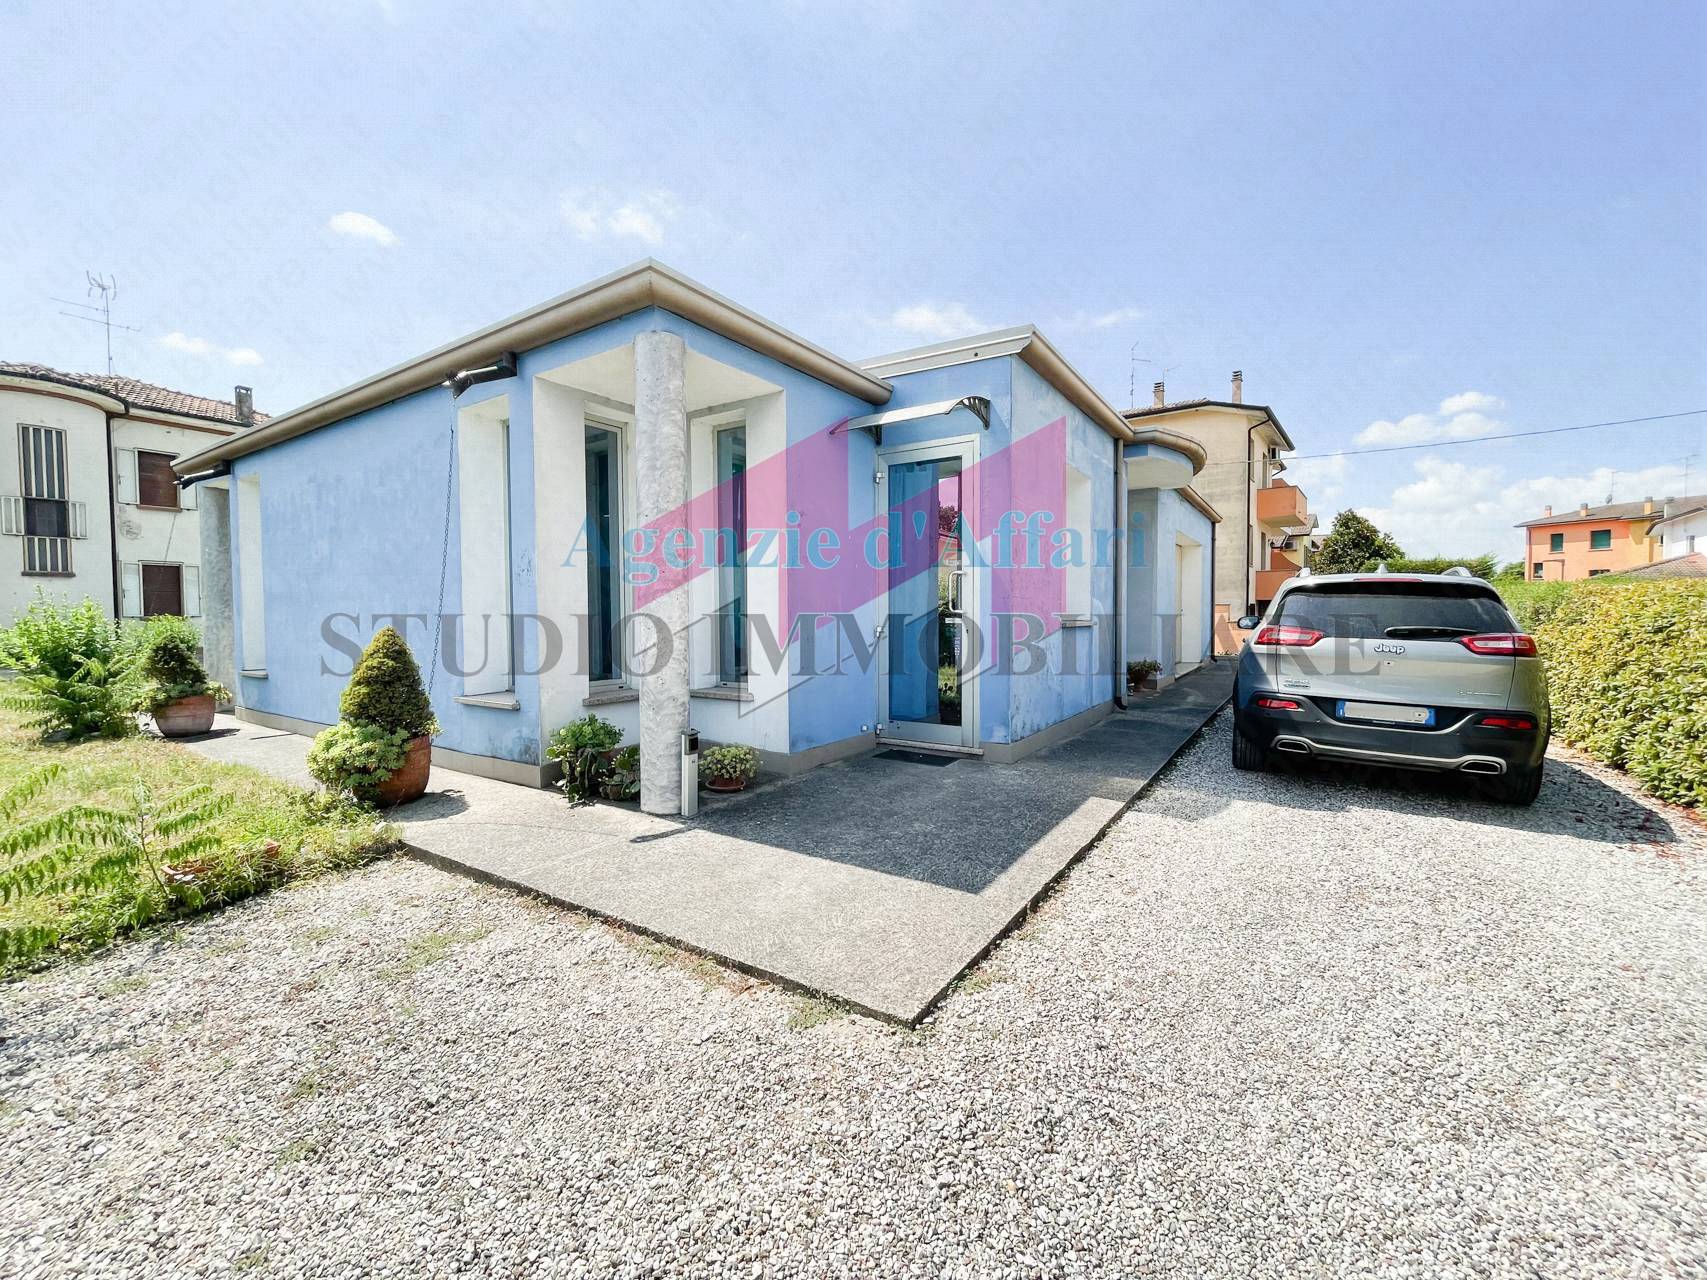 Villa in vendita a Sermide, 6 locali, prezzo € 105.000 | PortaleAgenzieImmobiliari.it